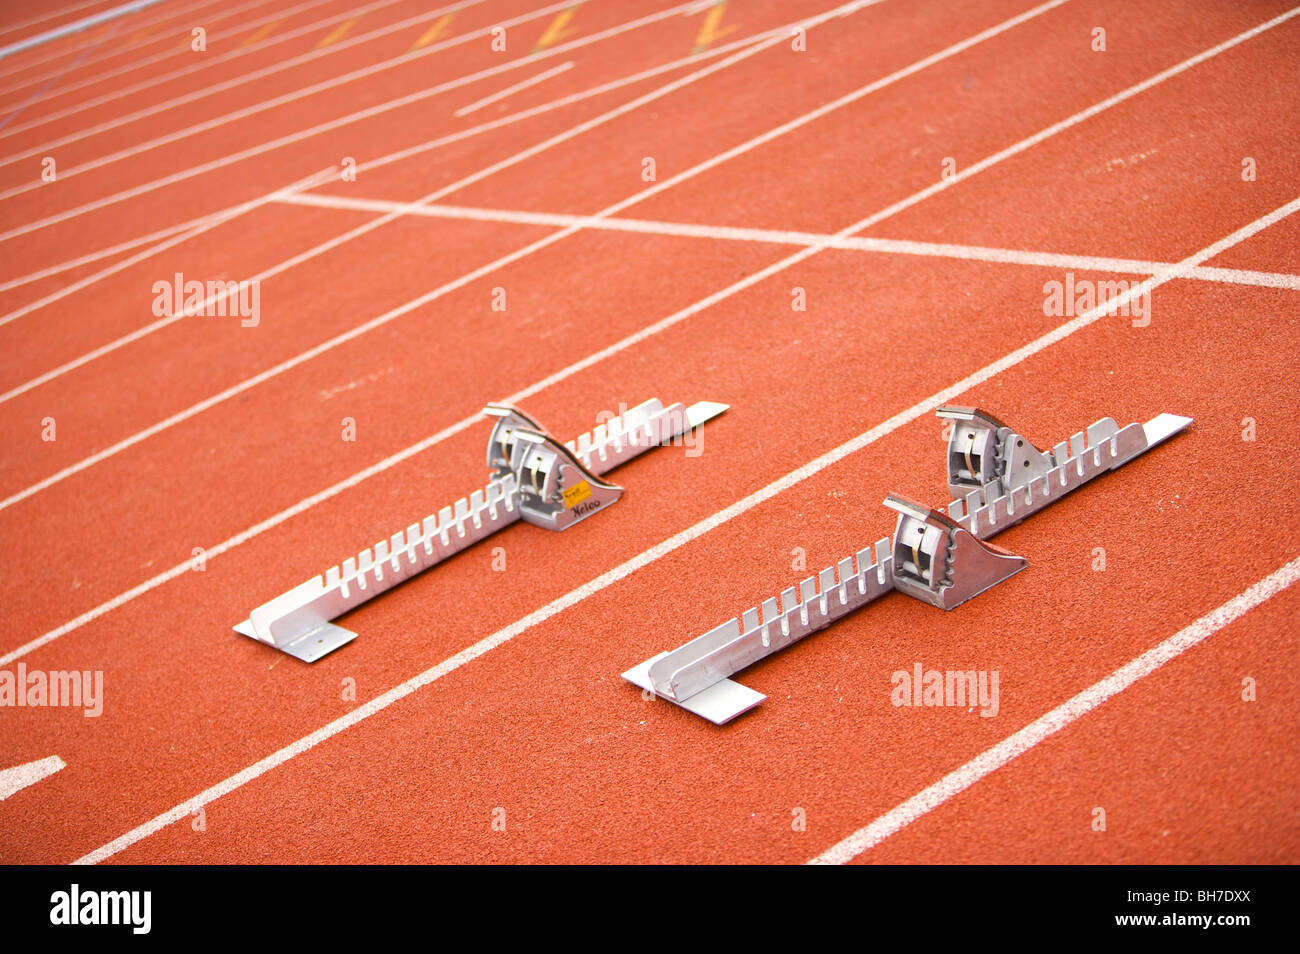 Olympische Spiele, London 2012, laufen, Strecke, Gassen, Leichtathletik, Sportplatz, 1, Anzahl, erstes, Rennen, Action, Geschwindigkeit, Fokus, Blöcke, Stockfoto